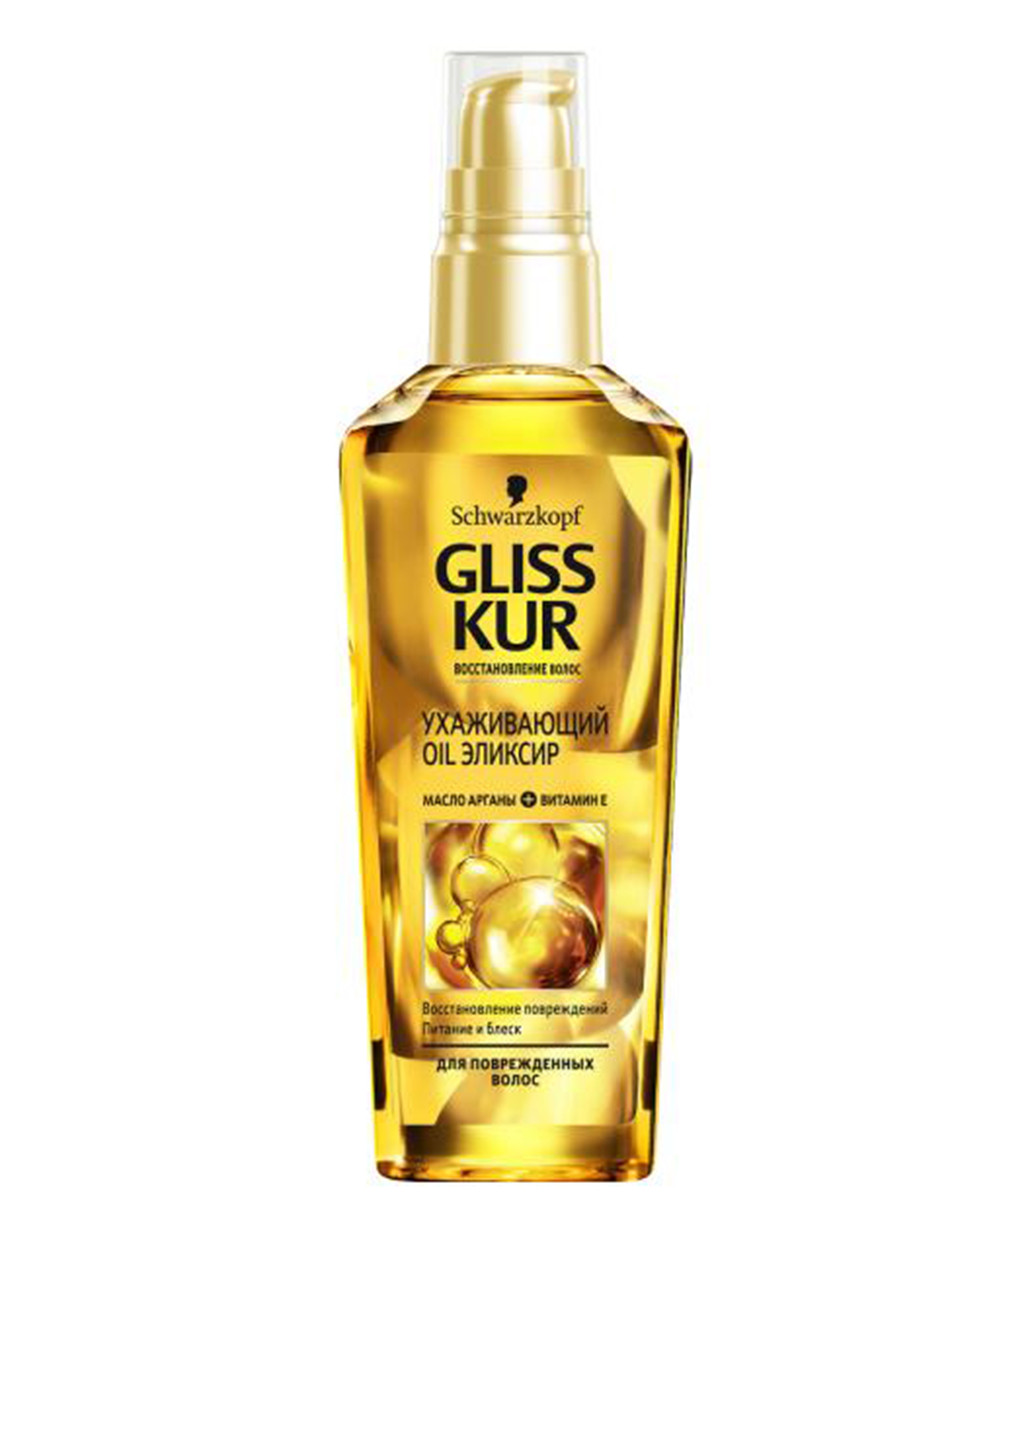 Еліксир Oil Nutritive для волосся, що січеться, 75 мл Gliss Kur (131708730)